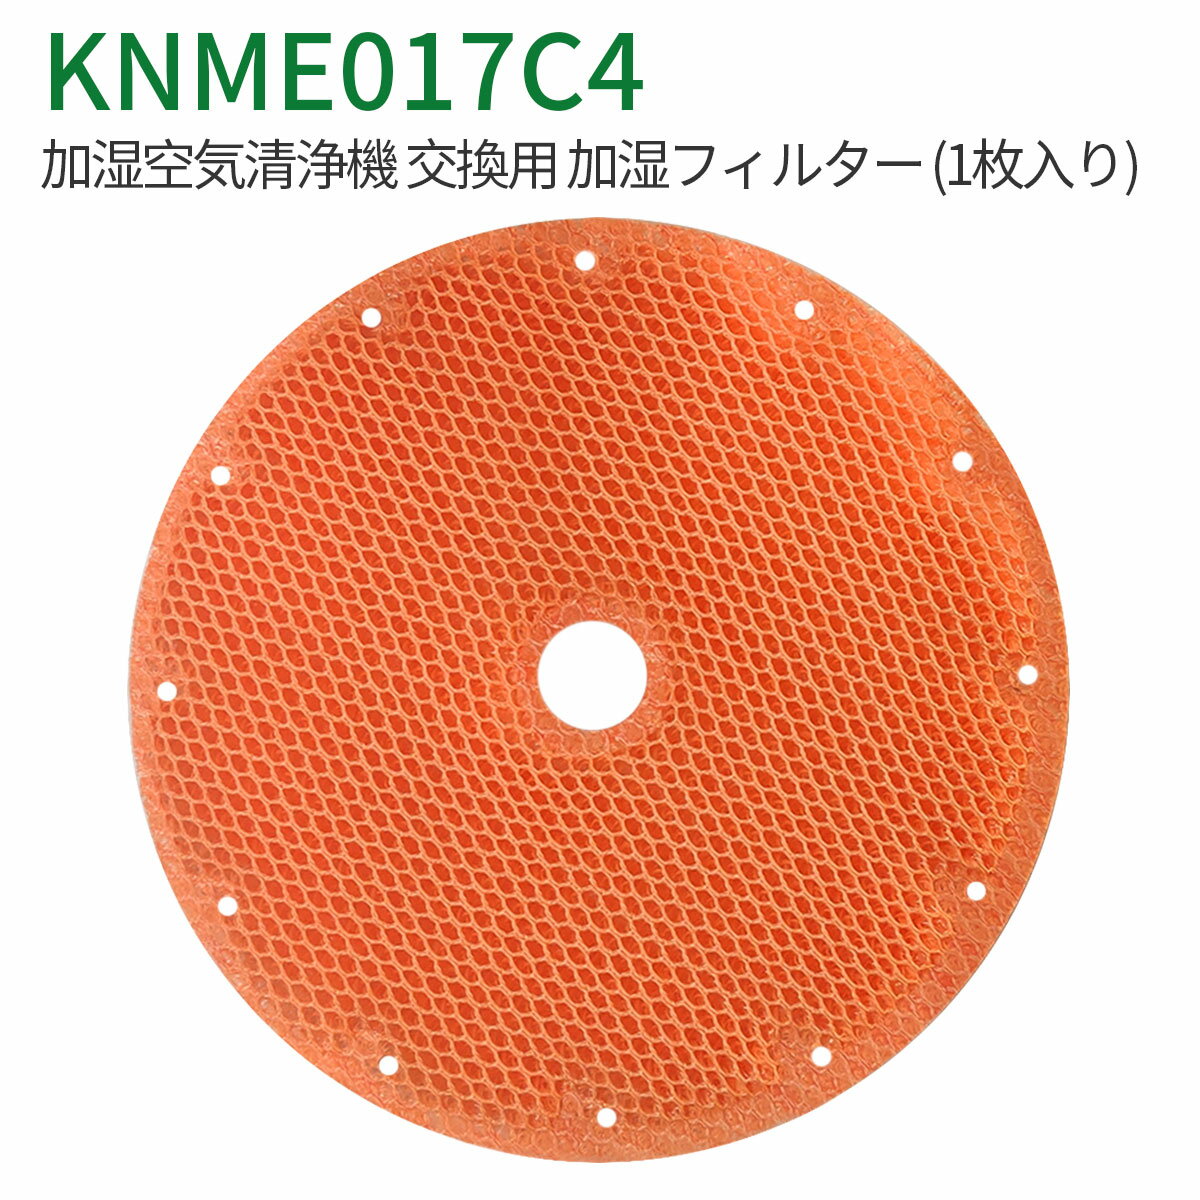 加湿フィルター knme017c4 ダイキン 加湿空気清浄機 フィルター KNME017C4（KNME017A4 KNME017B4の代替品） 交換用フィルター「互換品/1枚入り」